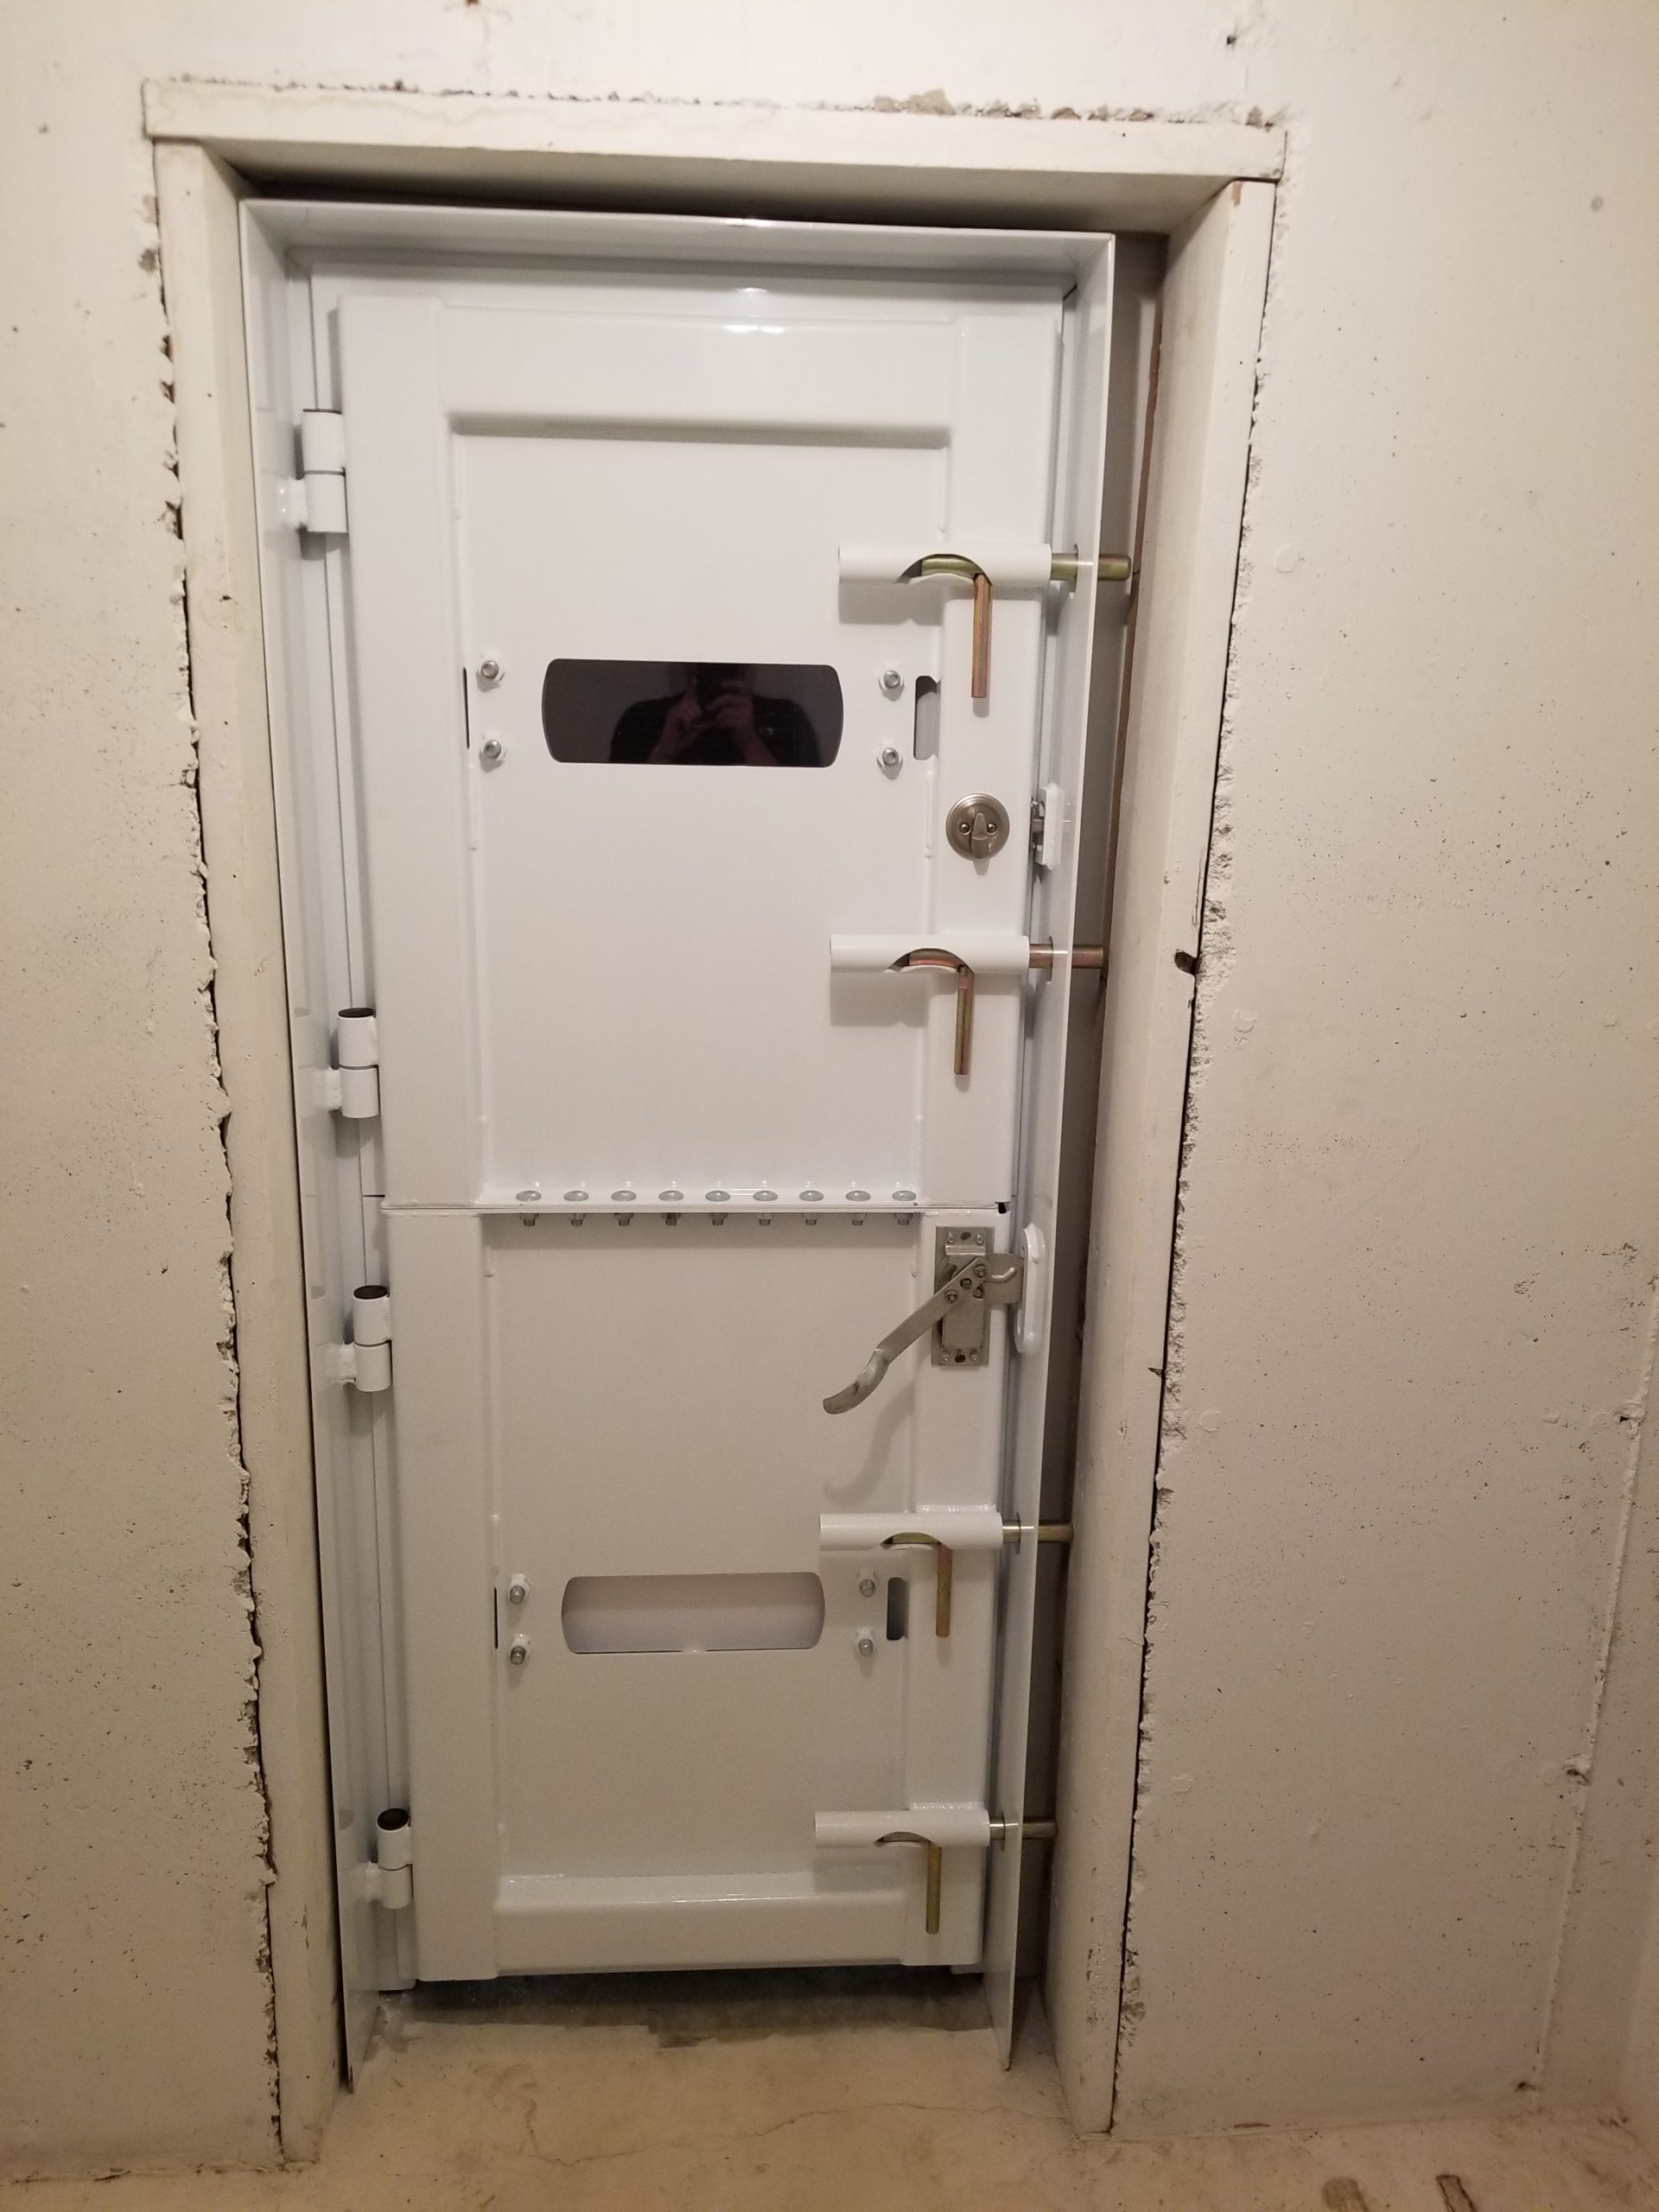 storm shelter door locks